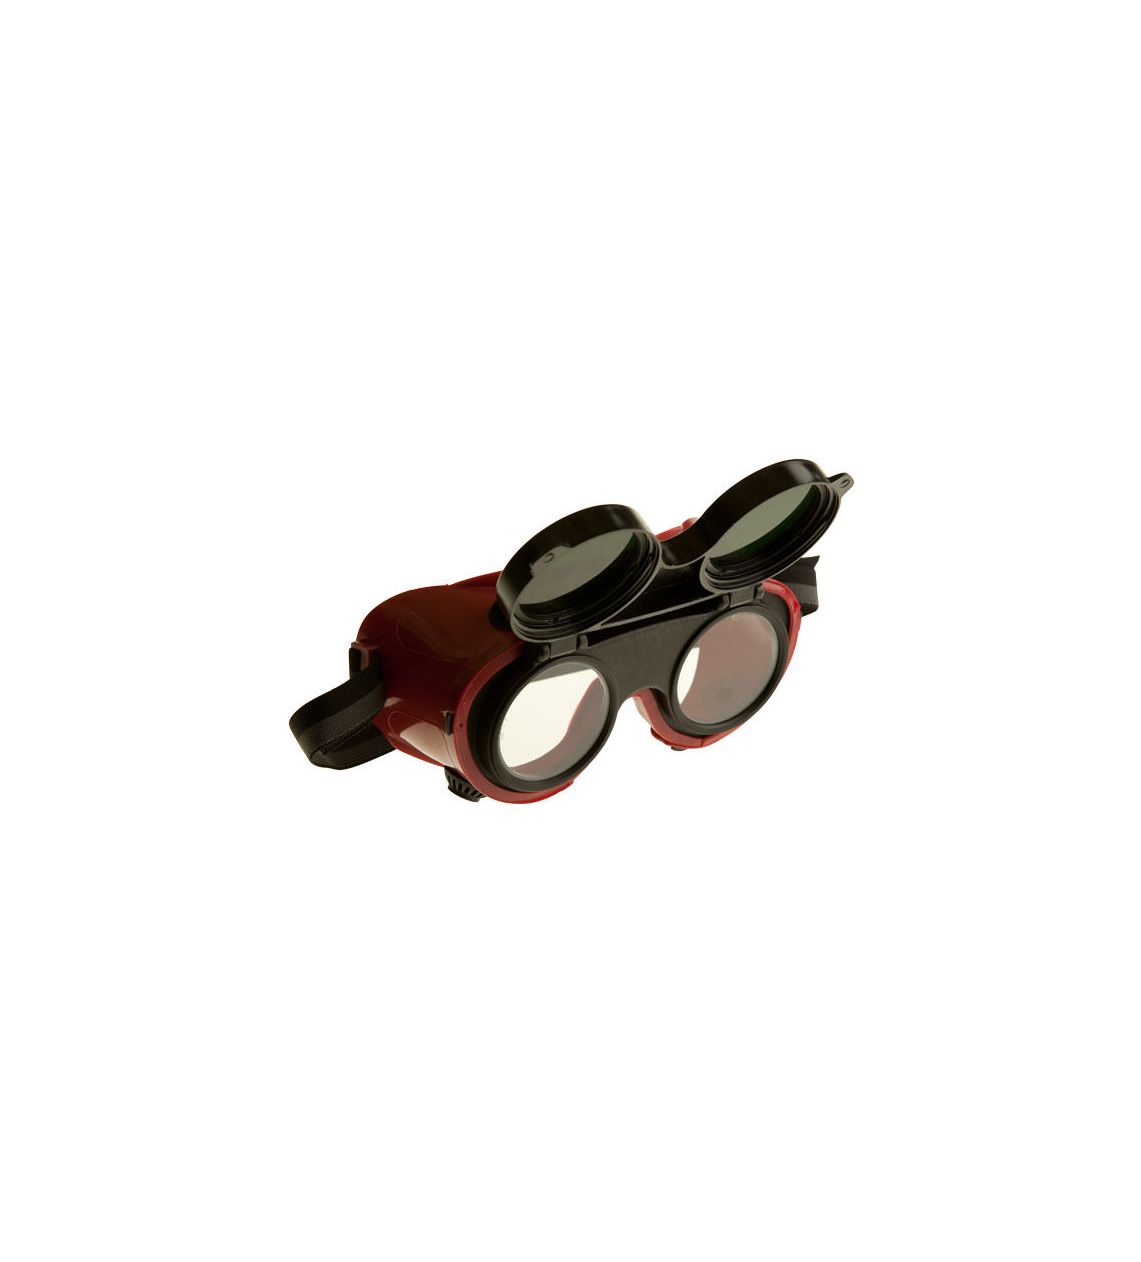 Schweisser - Schutzbrille Weldmaster. Farbe rot.